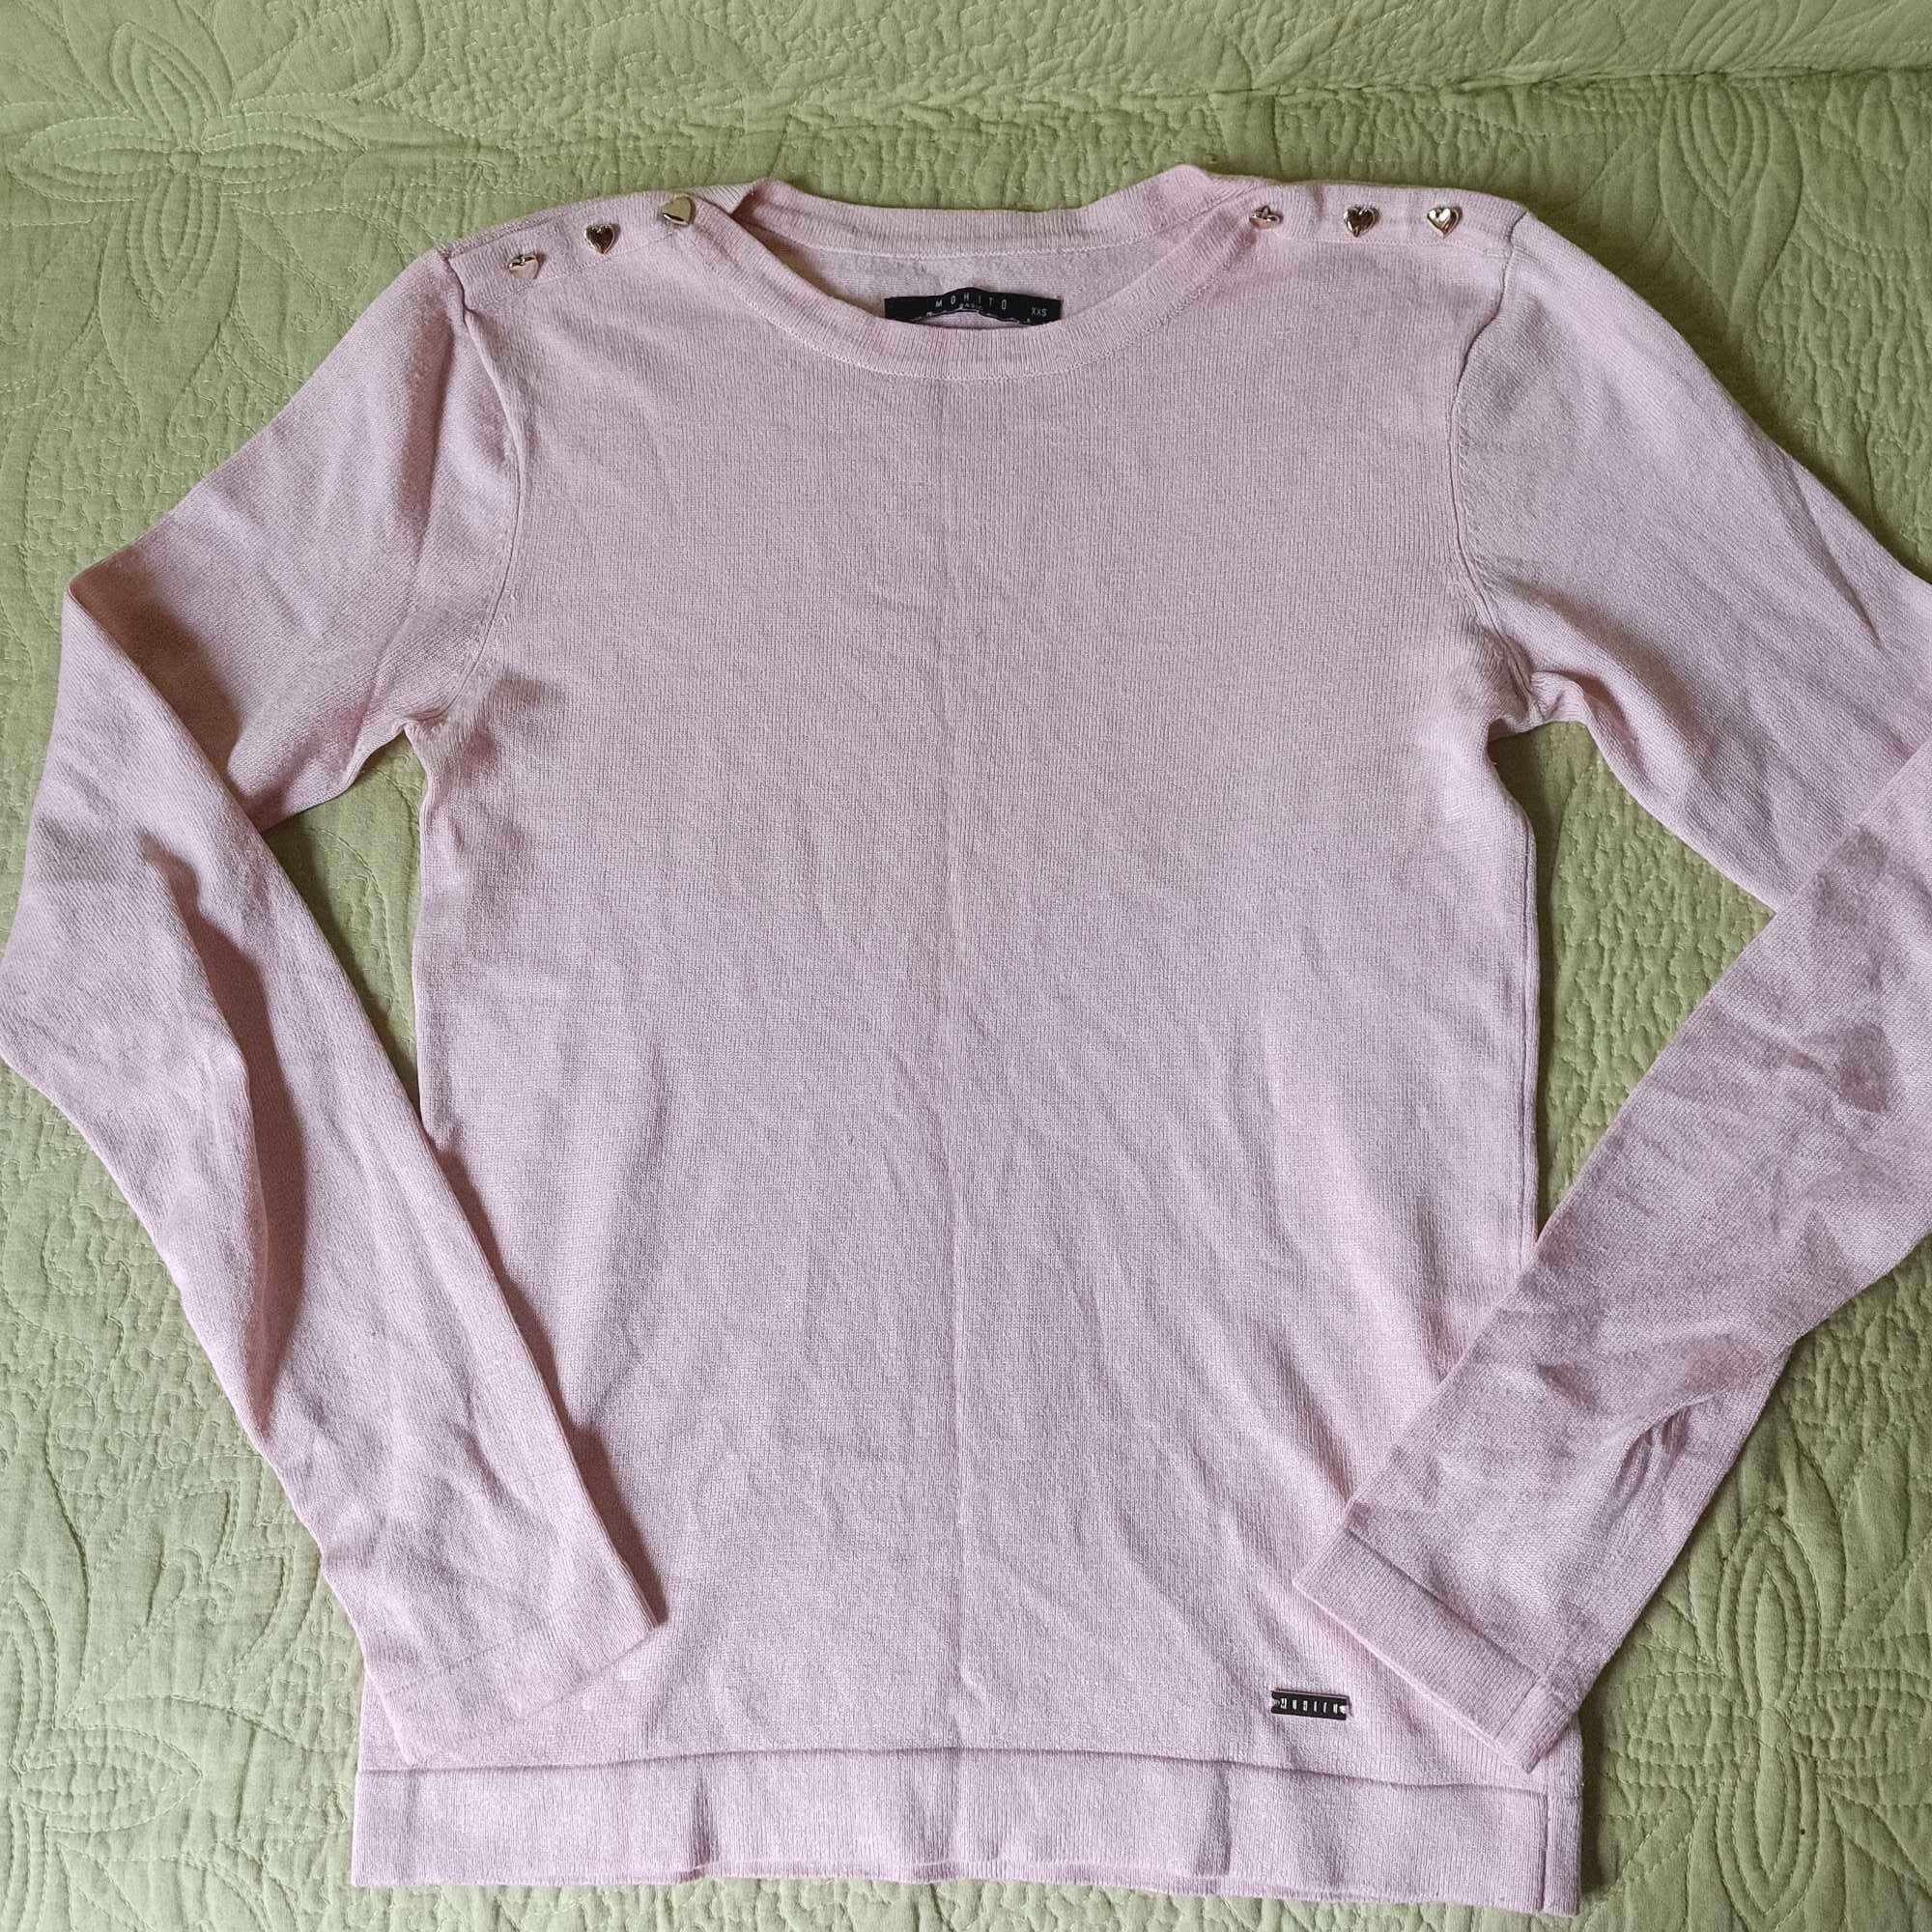 Śliczny, cienki, różowy sweterek Mohito.